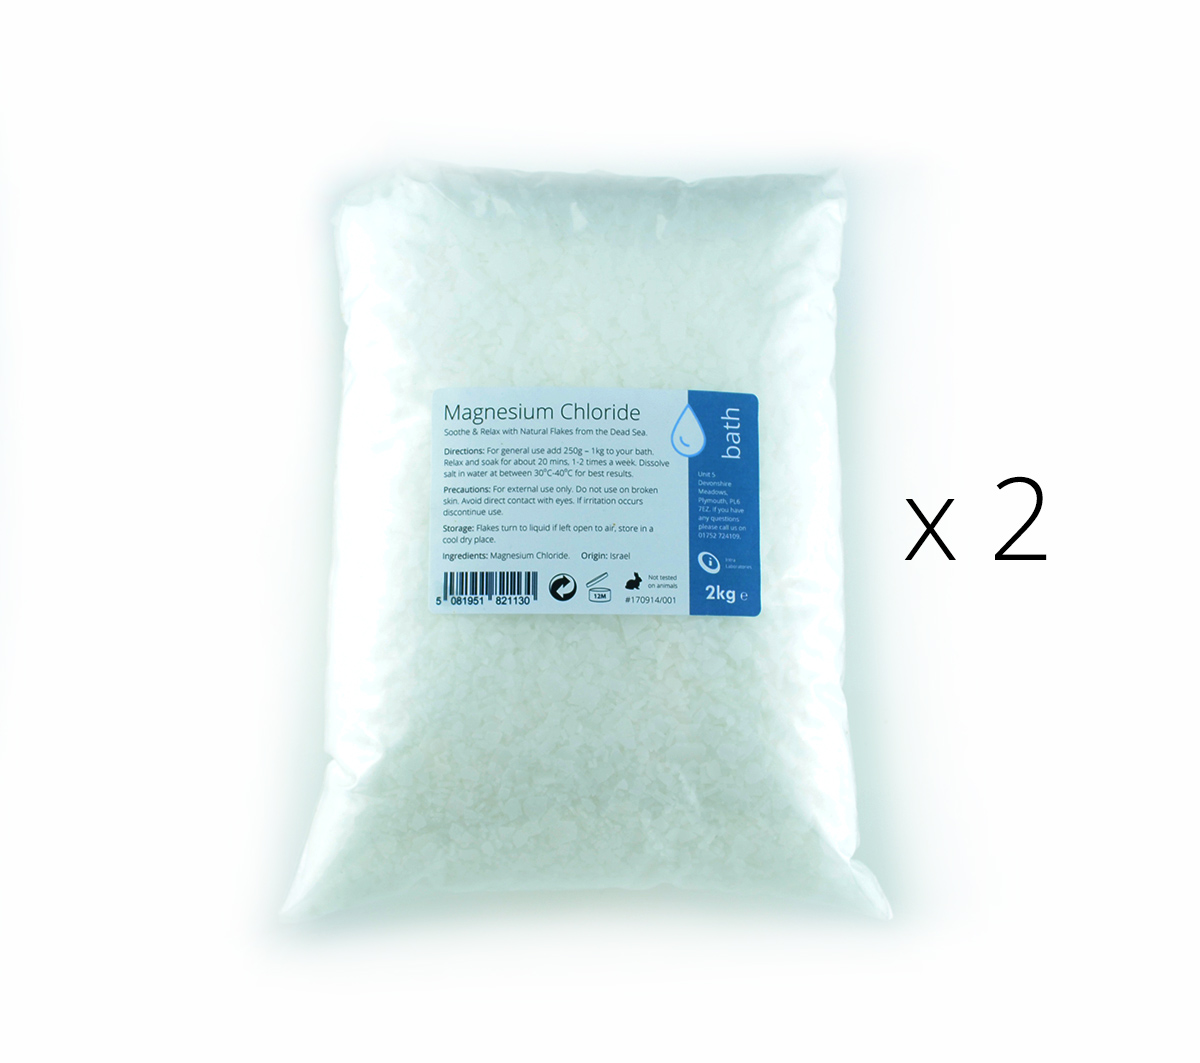 4kg - Magnesium Chloride